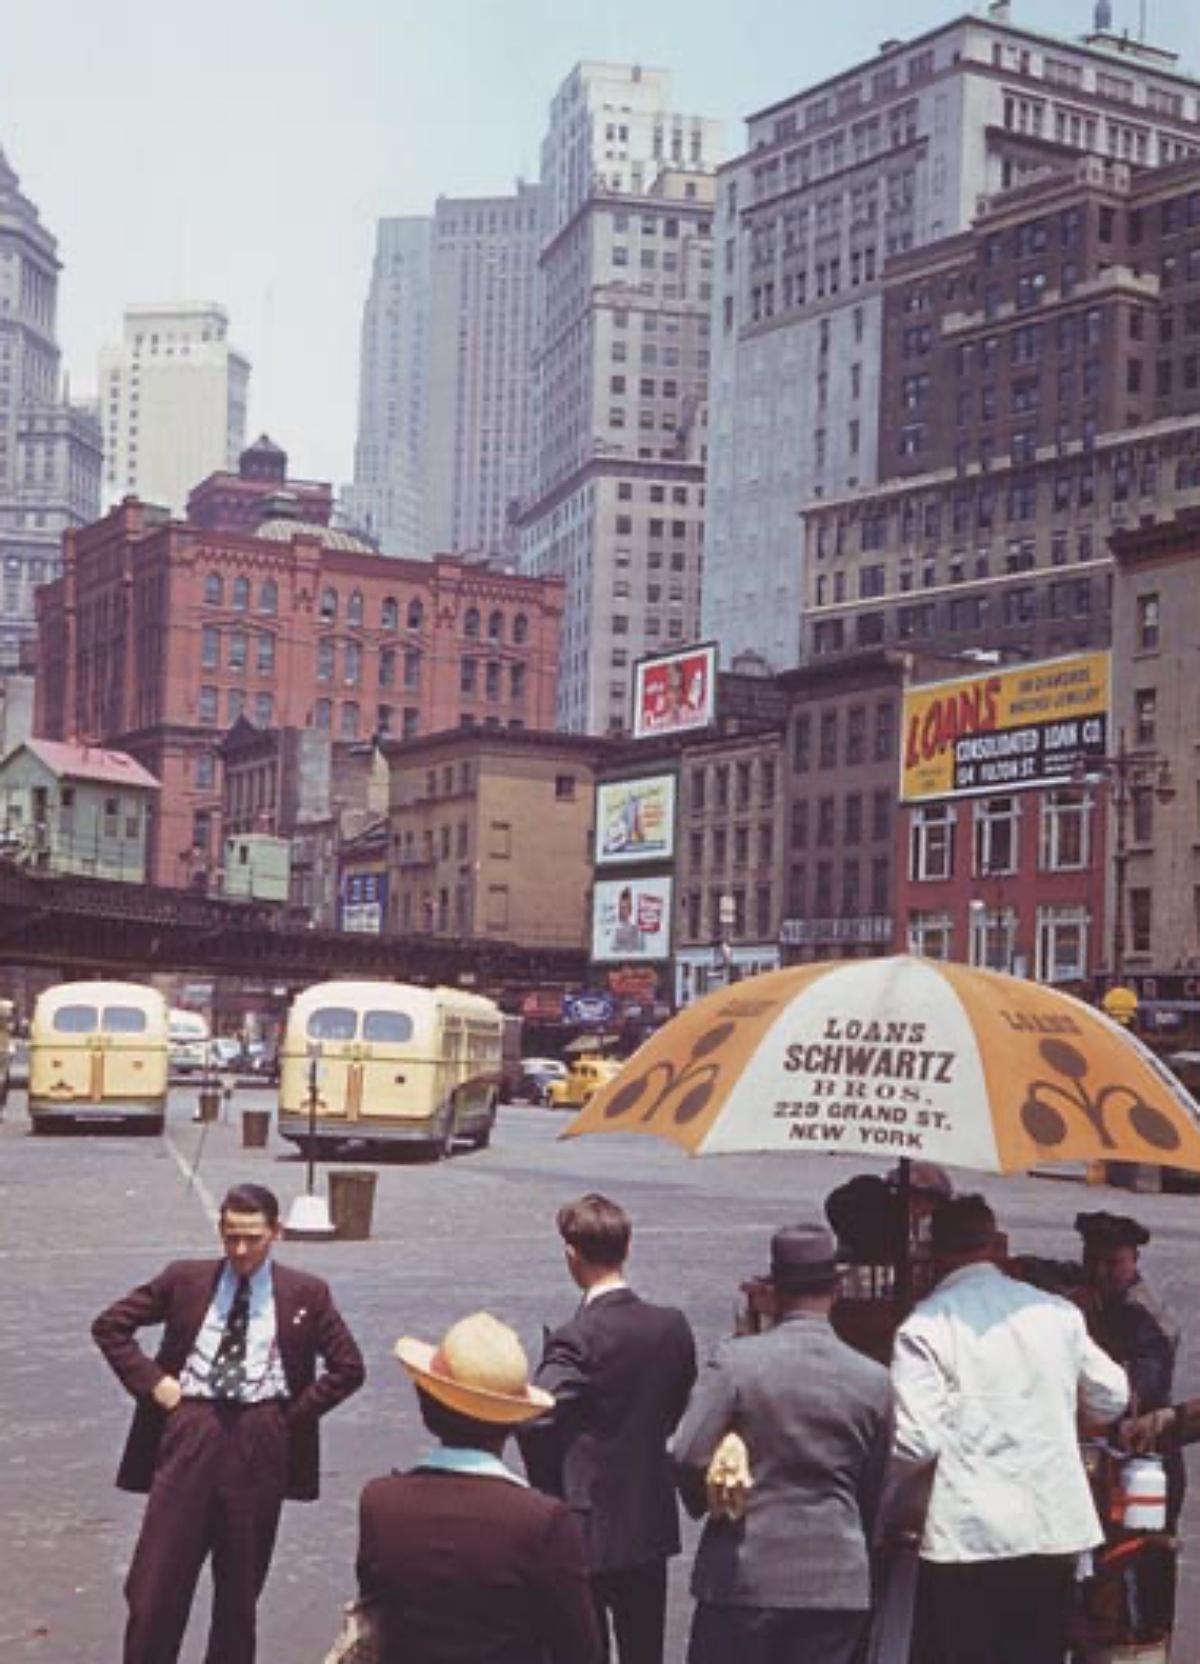 1940s NYC scene